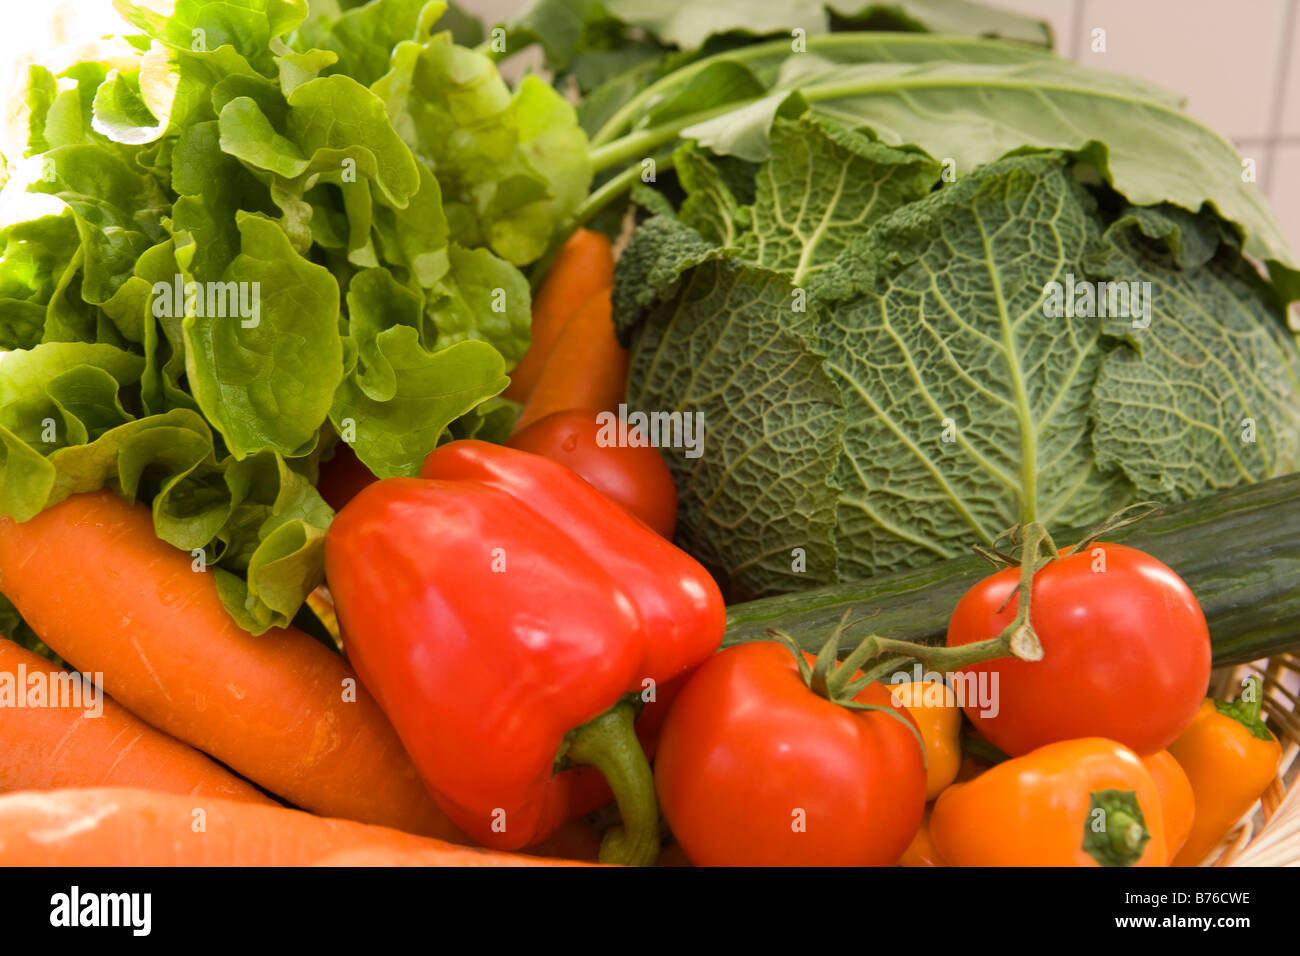 Gemuese, vegetable Stock Photo